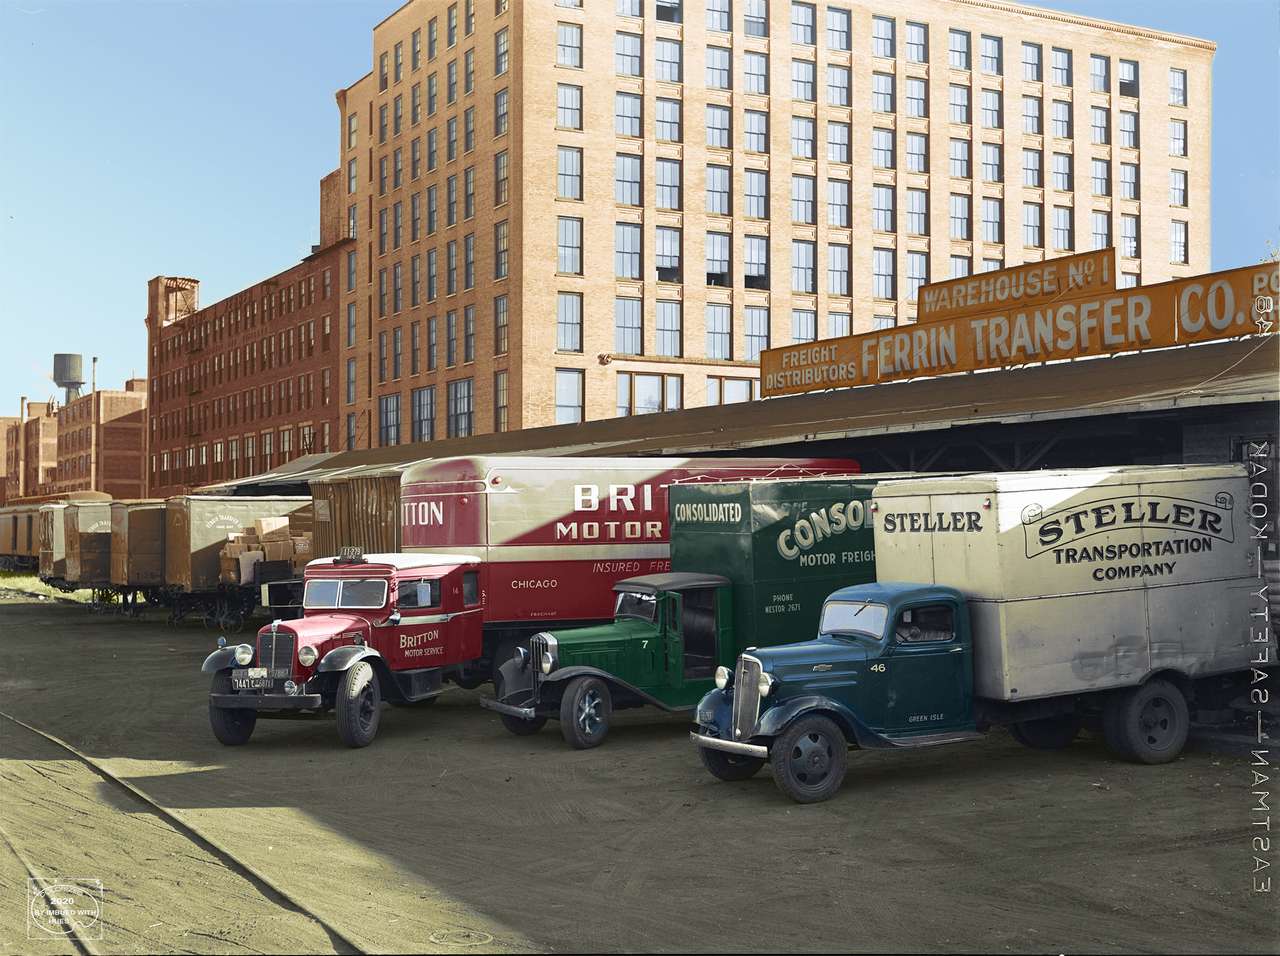 1939 - nákladní automobily načítání na terminálovém skladu. Minne skládačky online